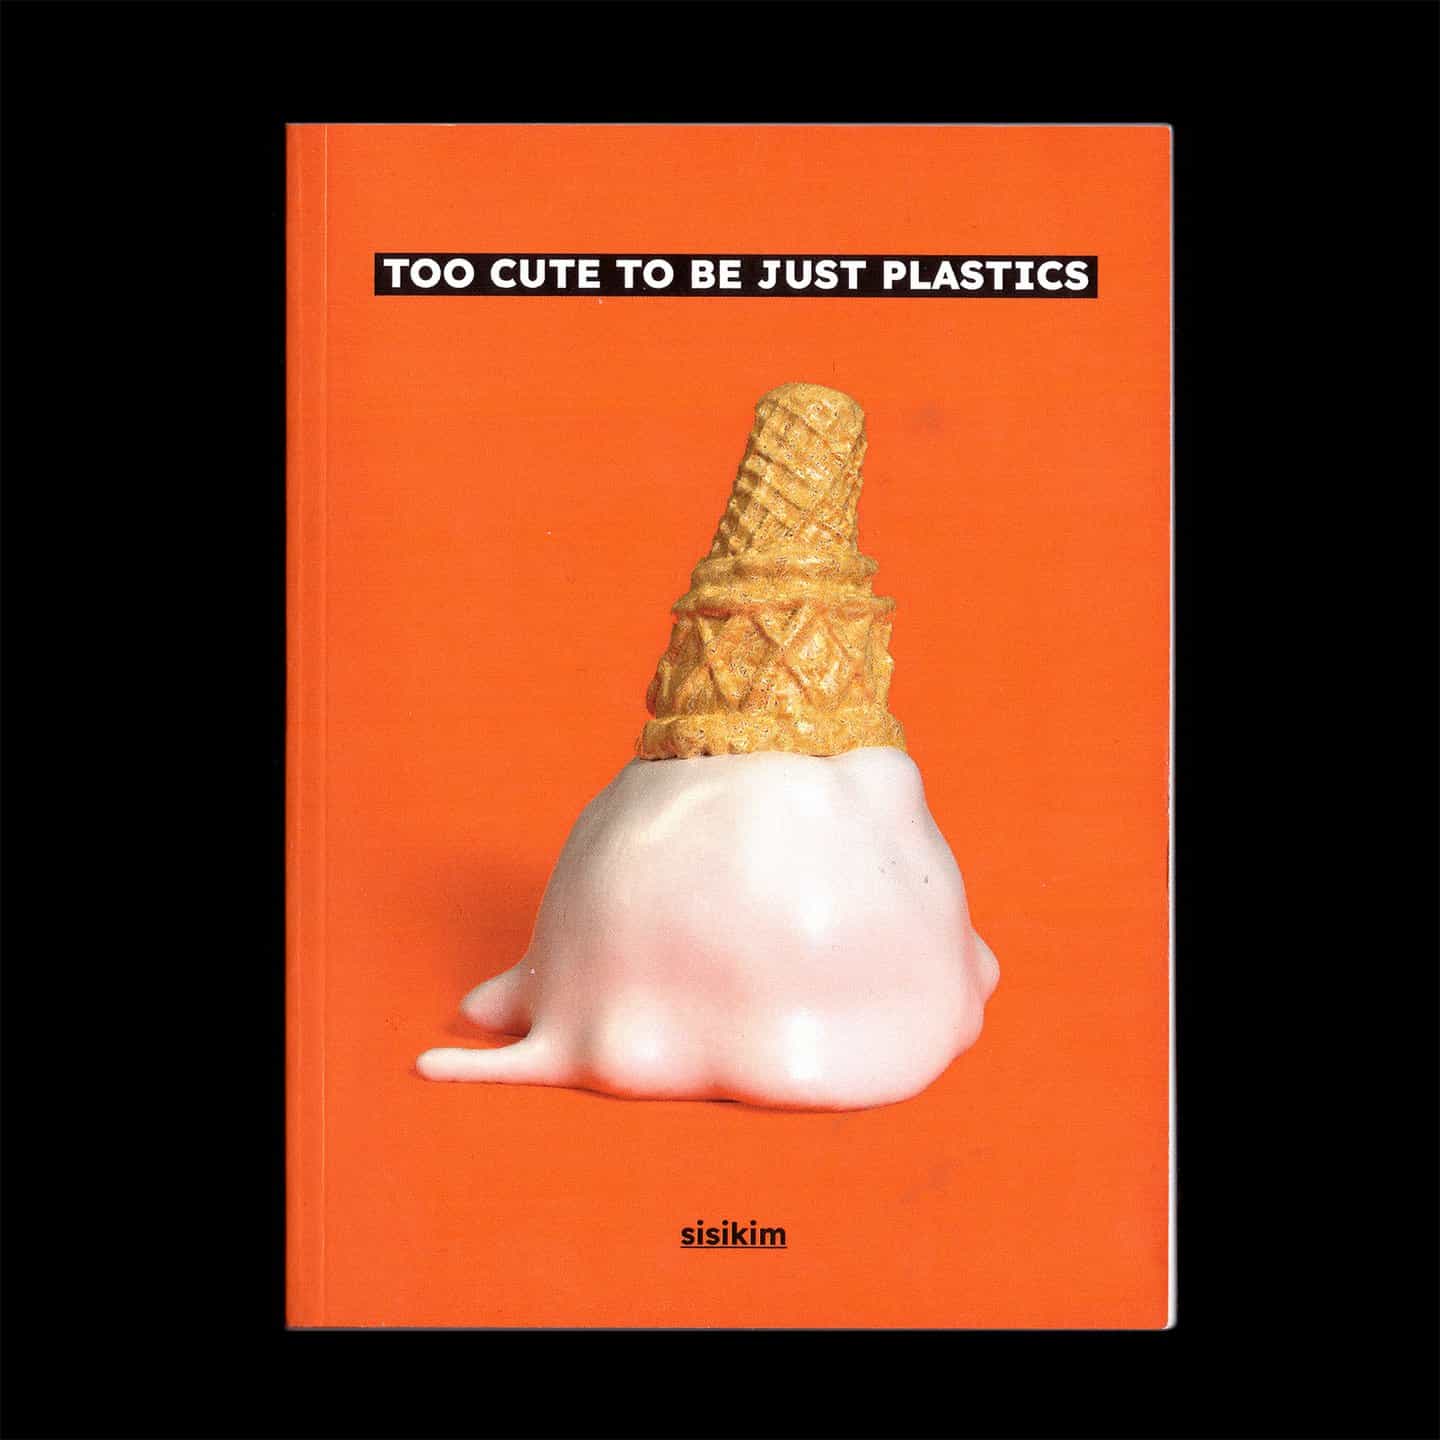 Sisi Kim: Portada del libro &lt;Too cute="" to="" be="" just="" plastics=""&gt; (Copyright © Sisi Kim, 2021)&lt;/Too&gt;